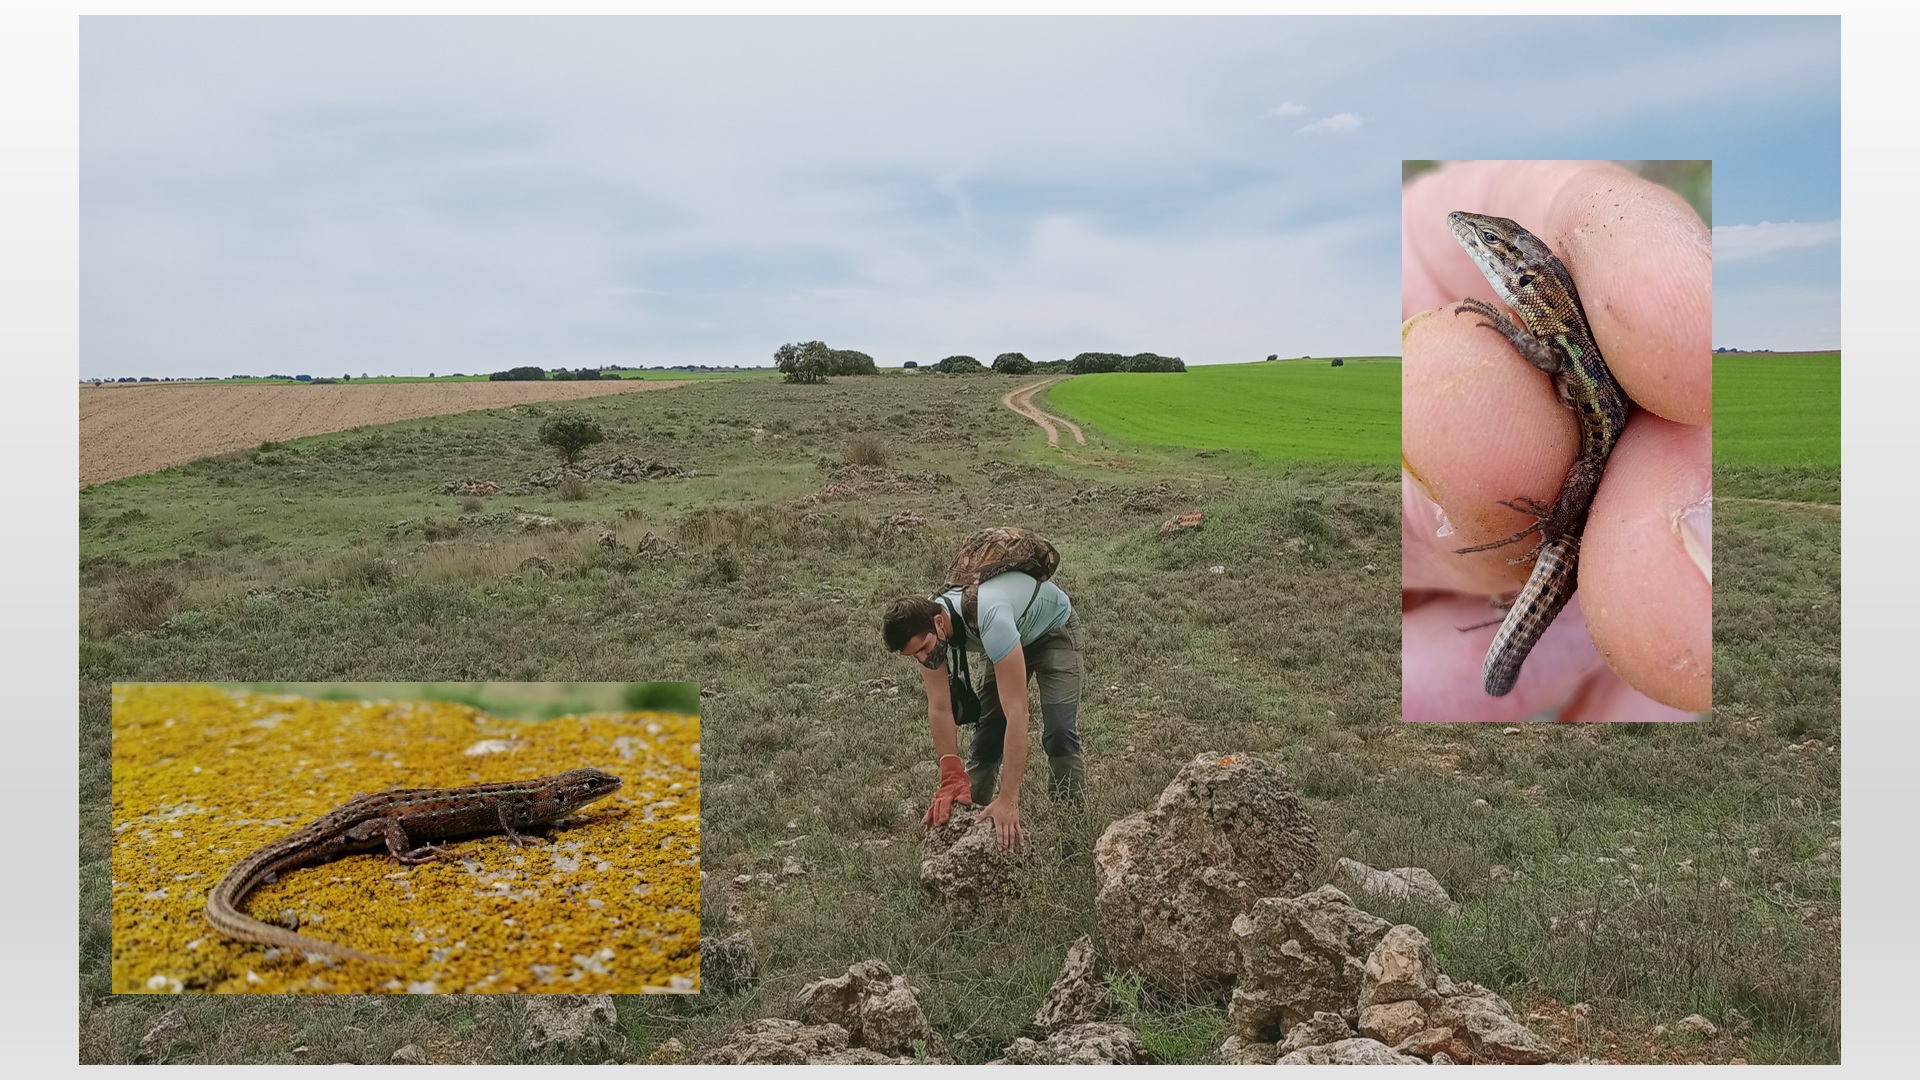 Imagen central del trabajo de campo en la Cañada Real Conquense, y dos imágenes de detalle de las dos especies de lagartijas investigadas